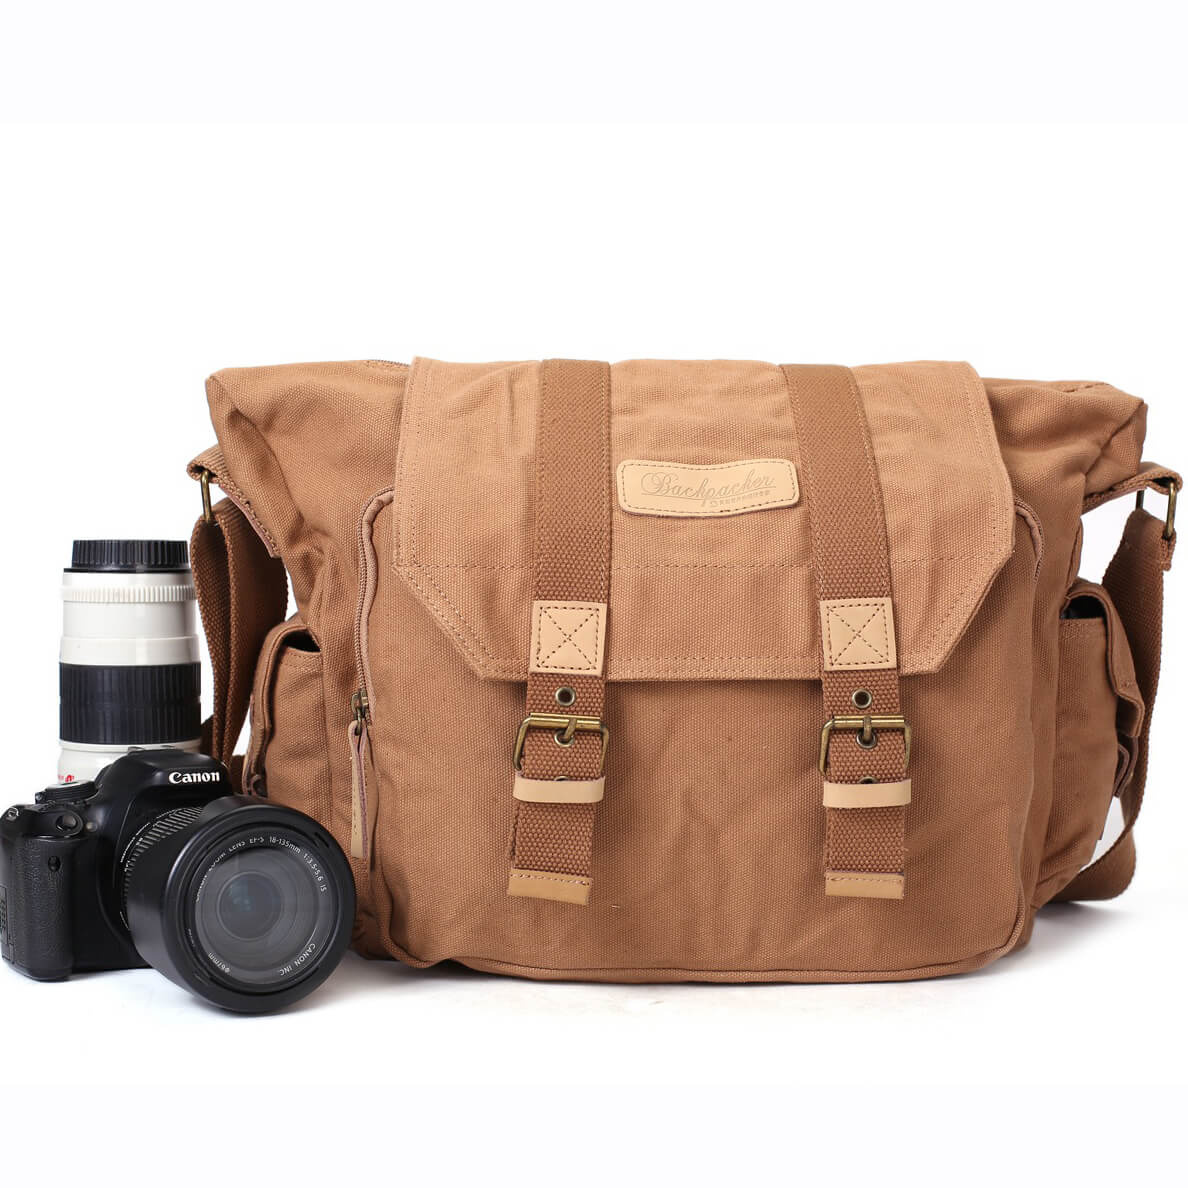 Padded Camera Bag Travel Camera Shoulder Bag Water-resistant Shock-proof  Camera Case Messenger Bag for